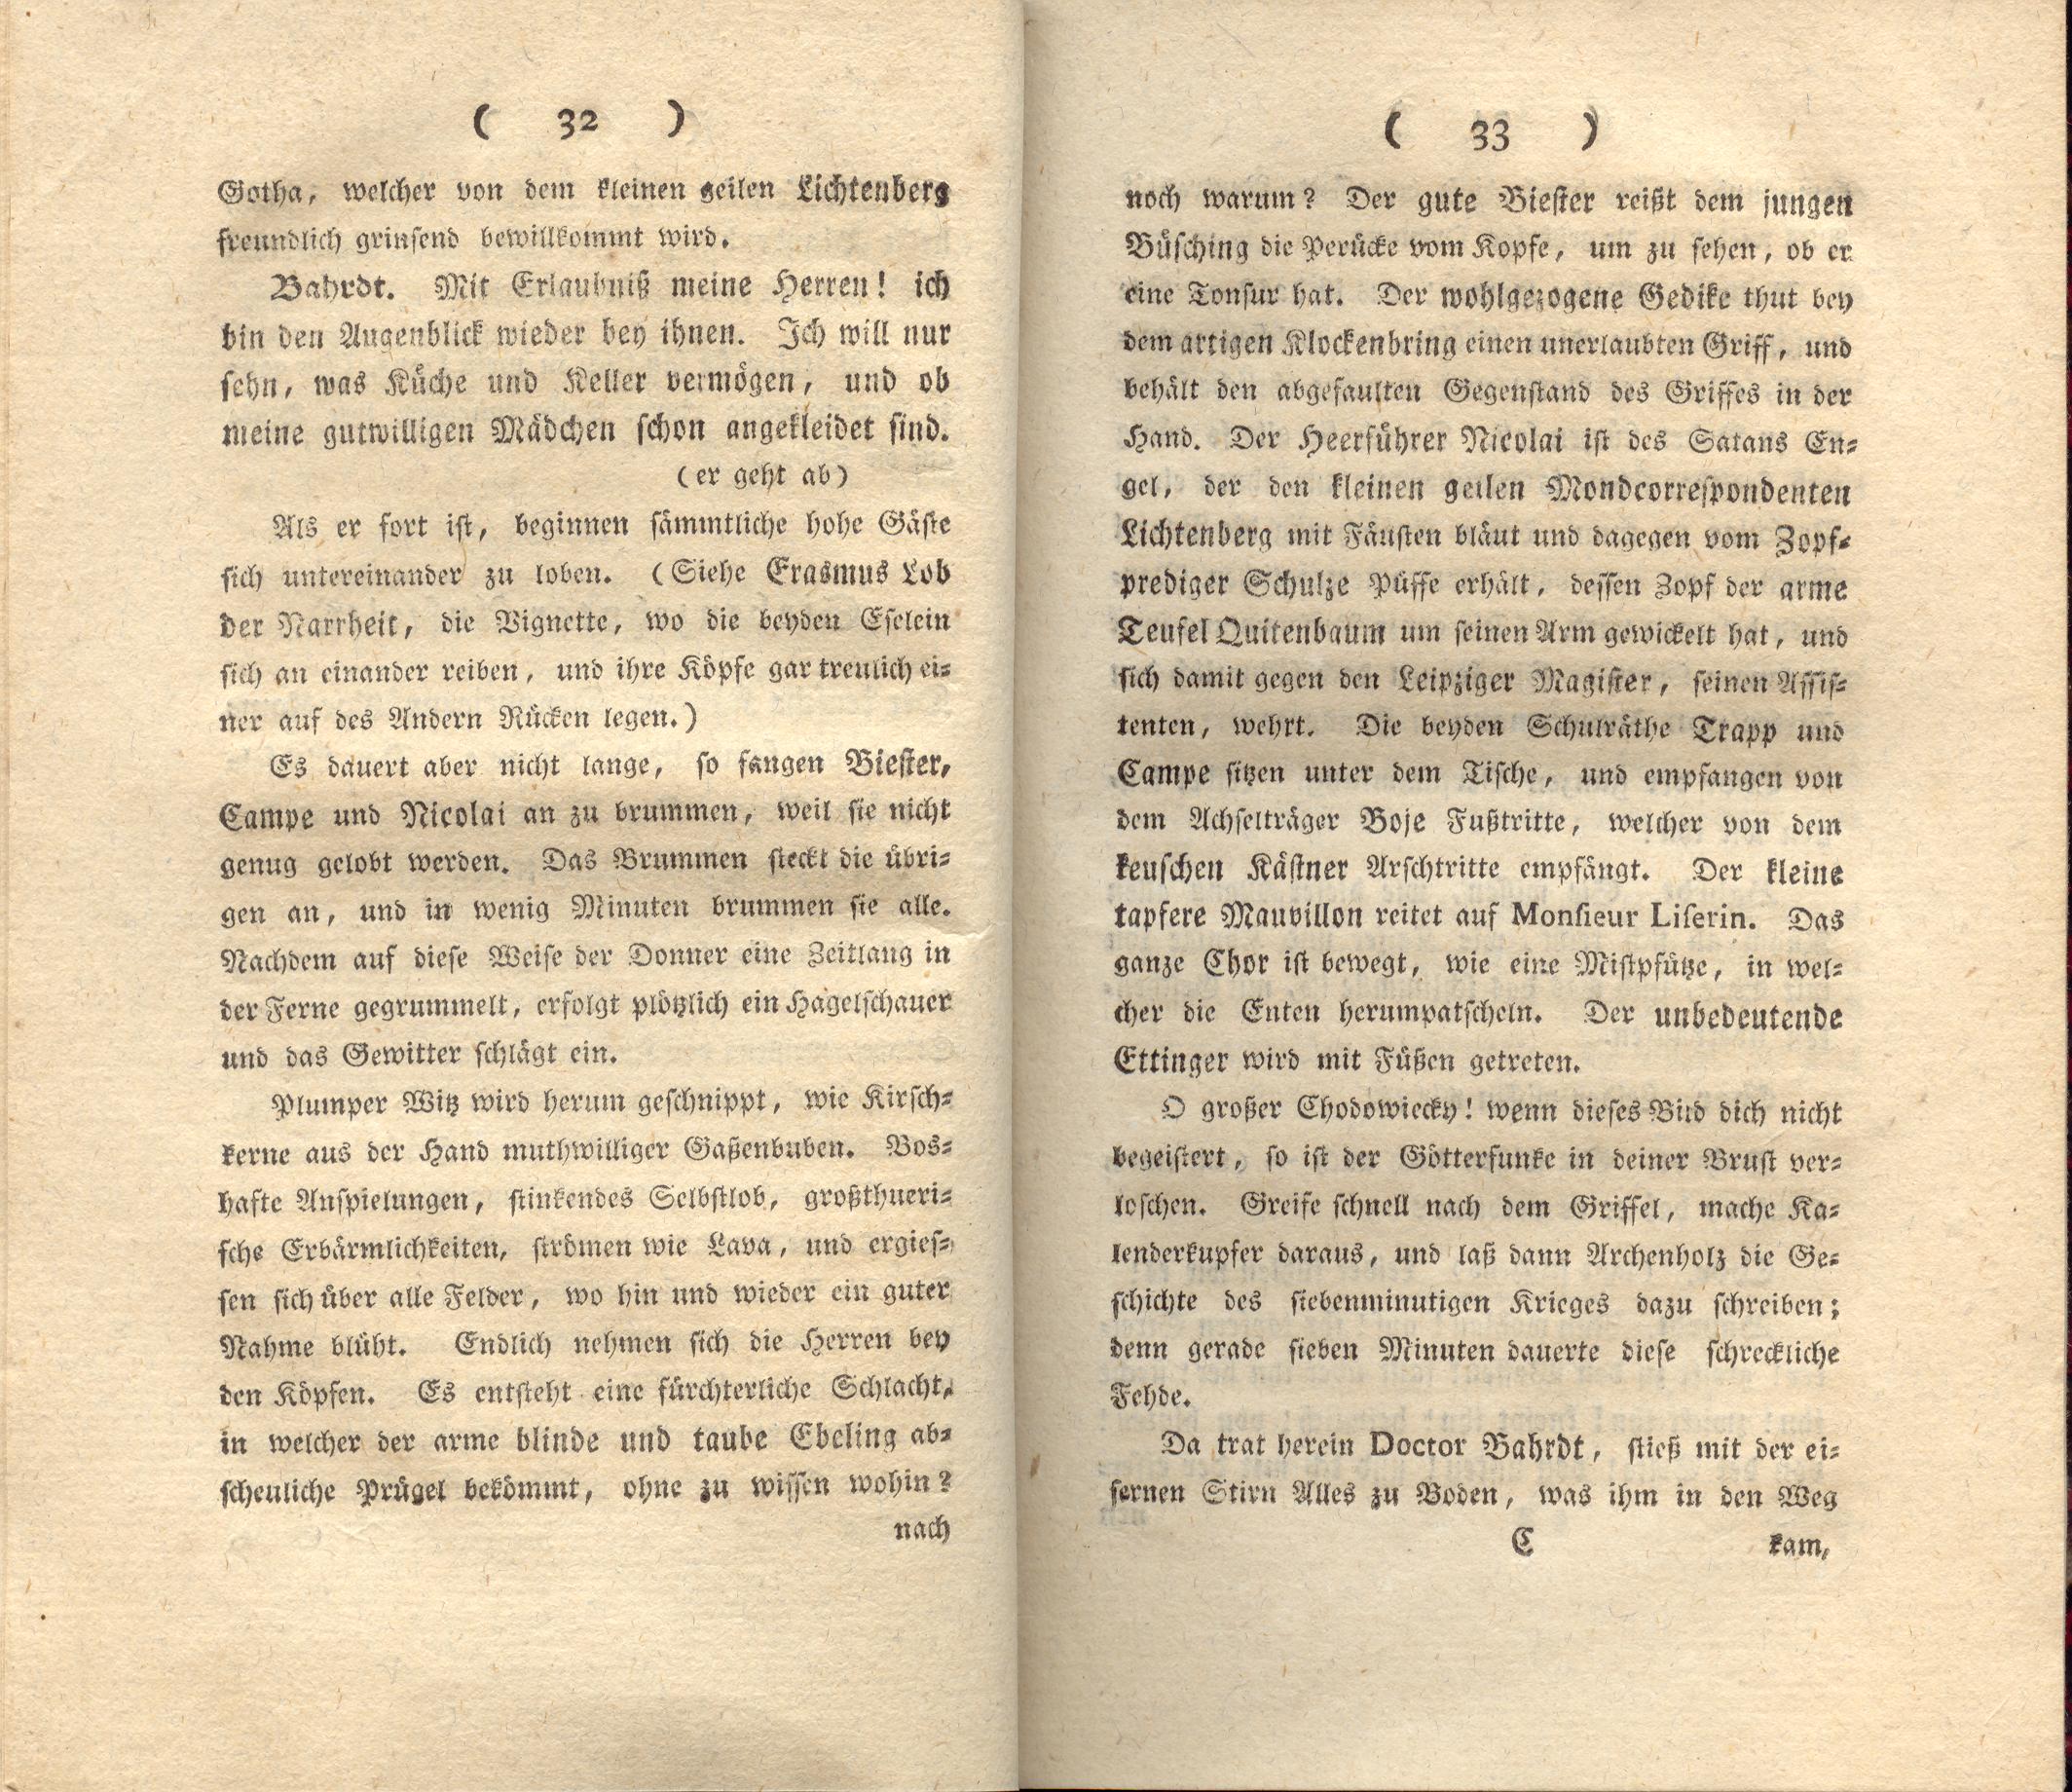 Doctor Bahrdt mit der eisernen Stirn (1790) | 18. (32-33) Main body of text